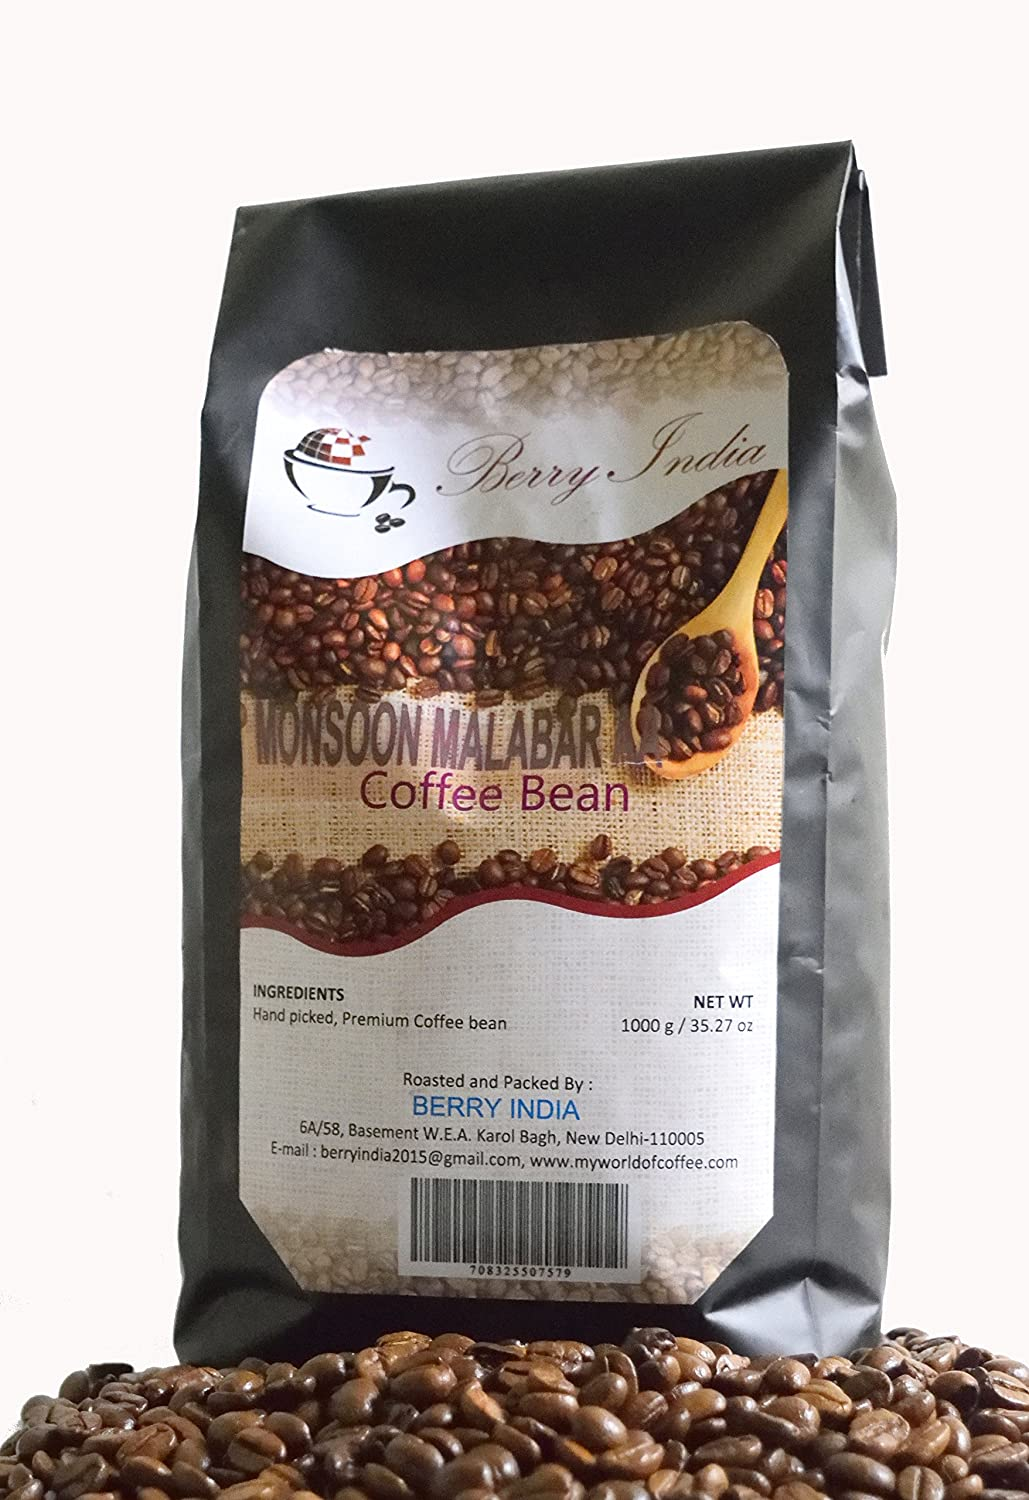 Café Berry India com grãos Monsoon Malabar. Fonte: Amazon